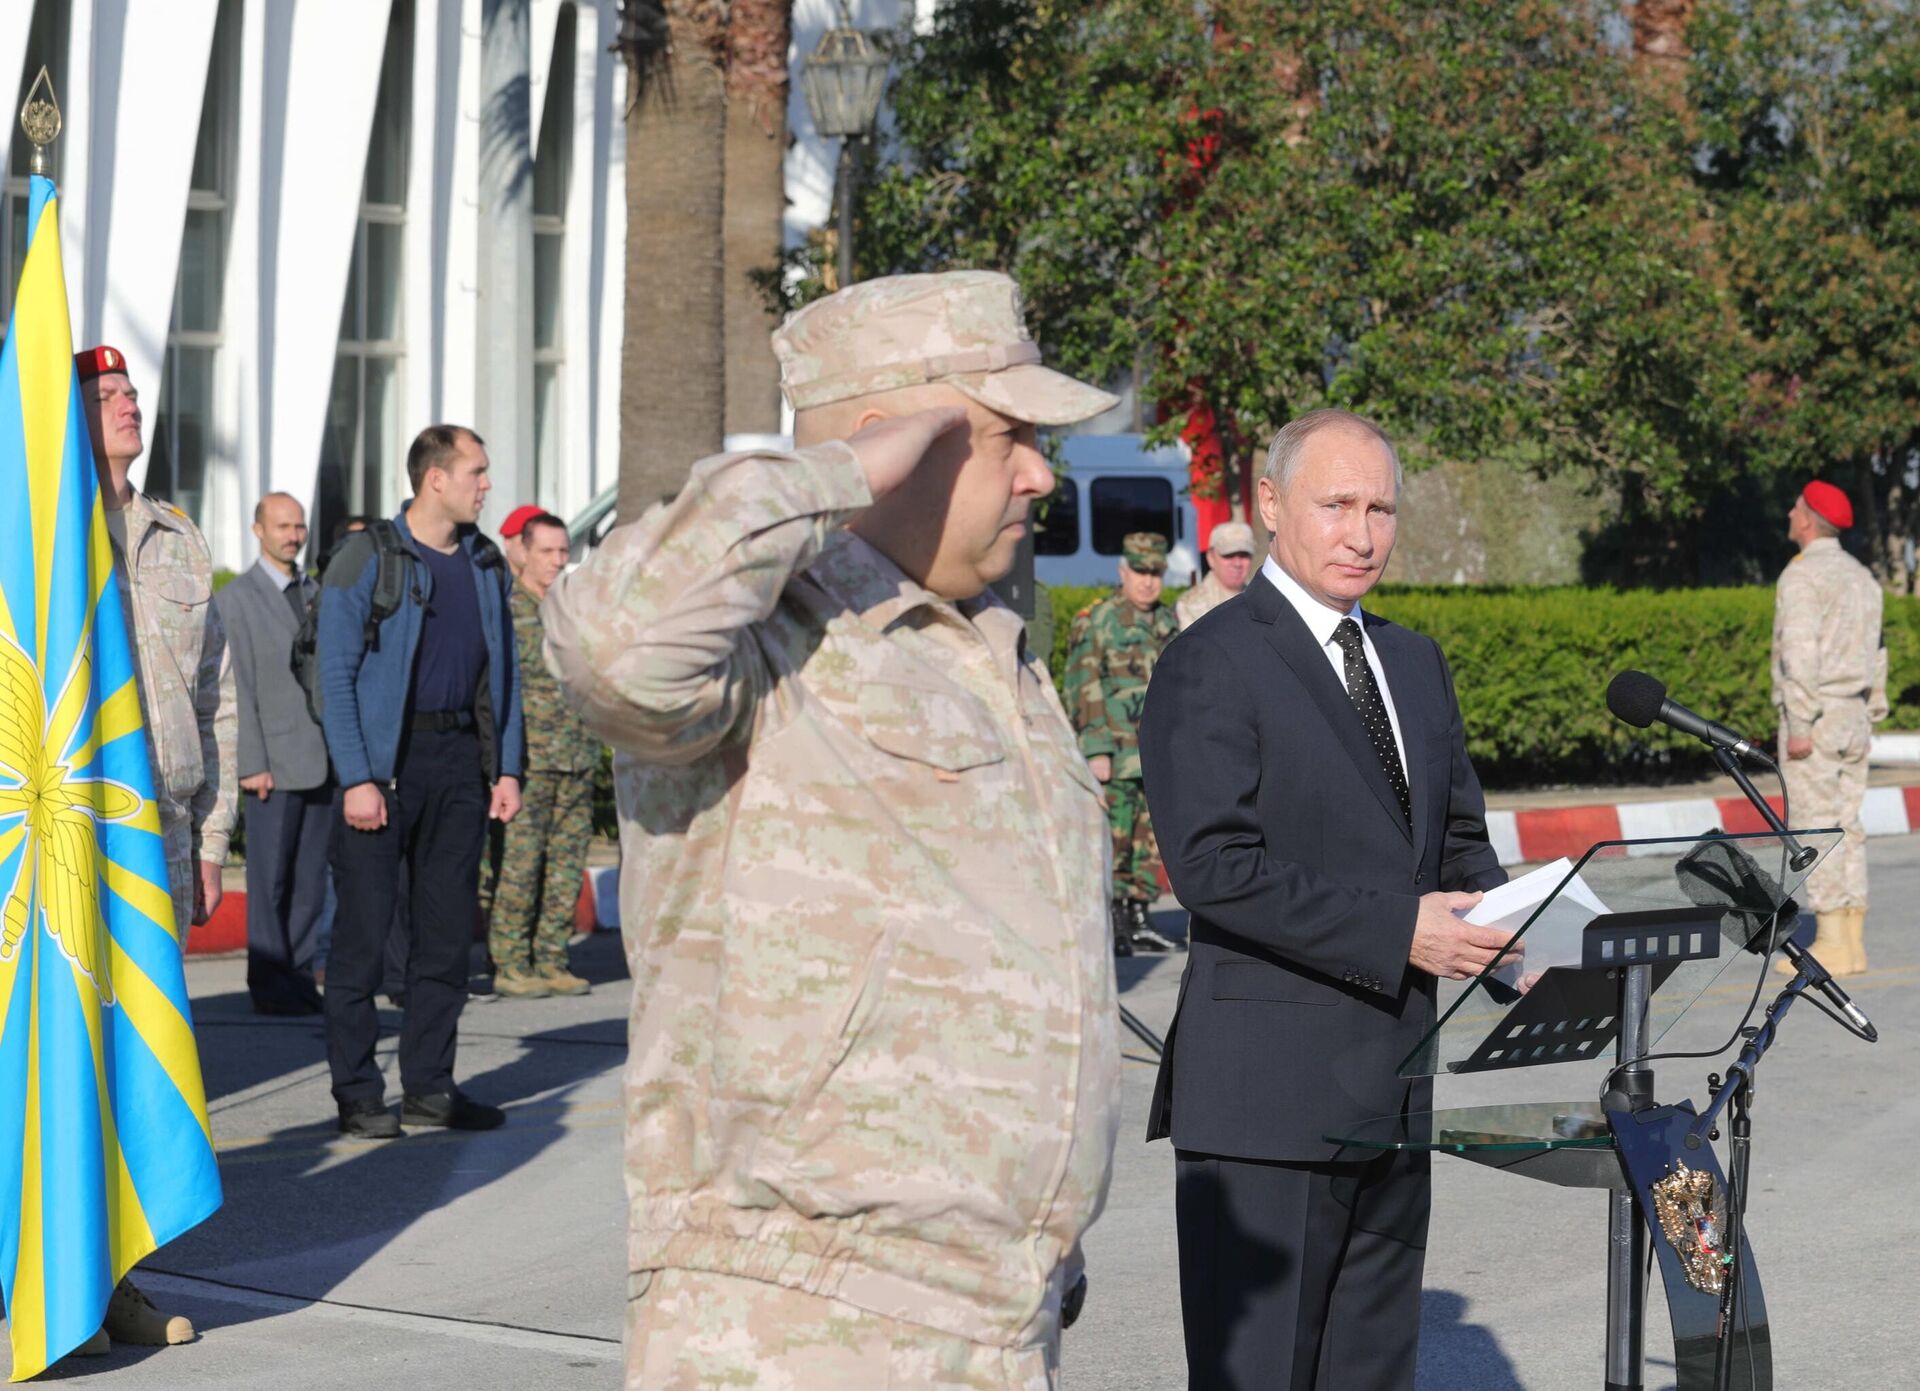 Tổng thống Nga Vladimir Putin và chỉ huy nhóm quân Nga tại Syria, Thượng tướng Sergei Surovikin (phía trước) trong chuyến thăm căn cứ không quân Khmeimim ở Syria. - Sputnik Việt Nam, 1920, 11.10.2022